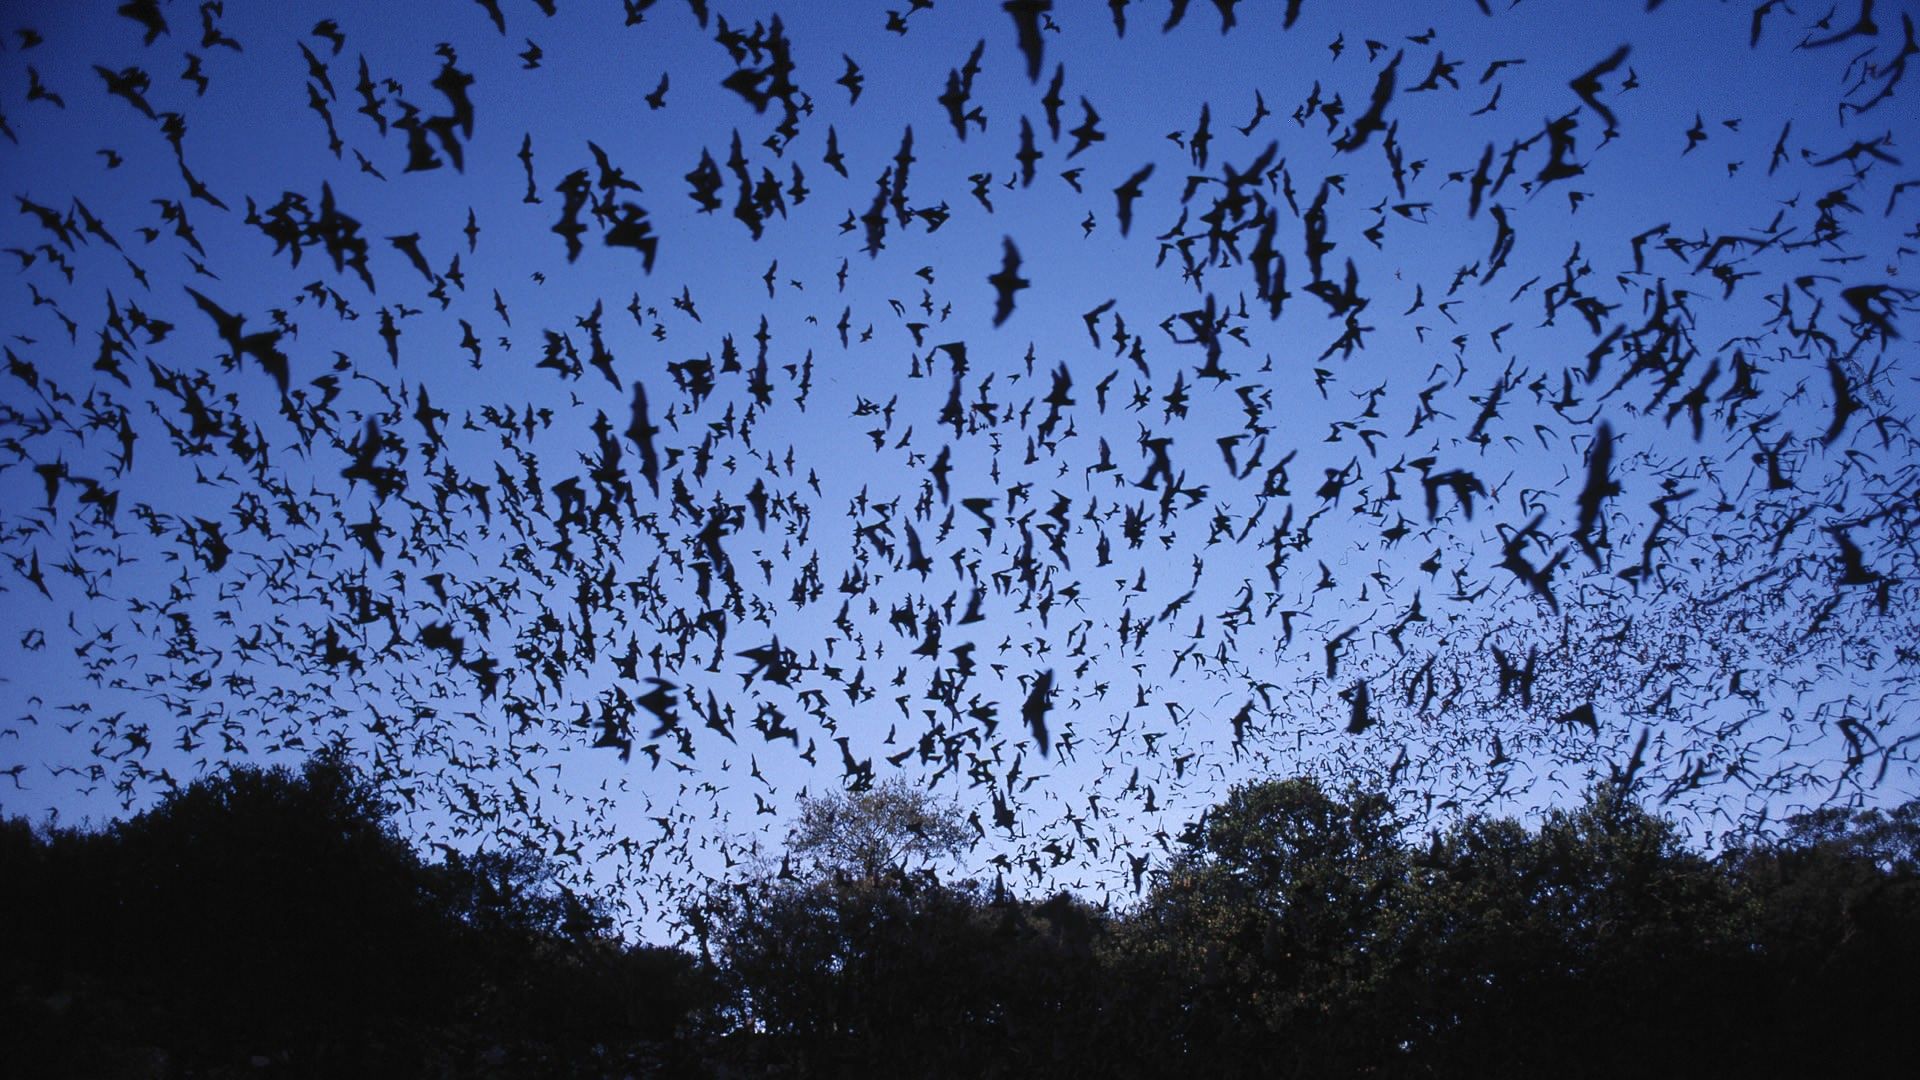 Bats wallpapers WallpaperUP